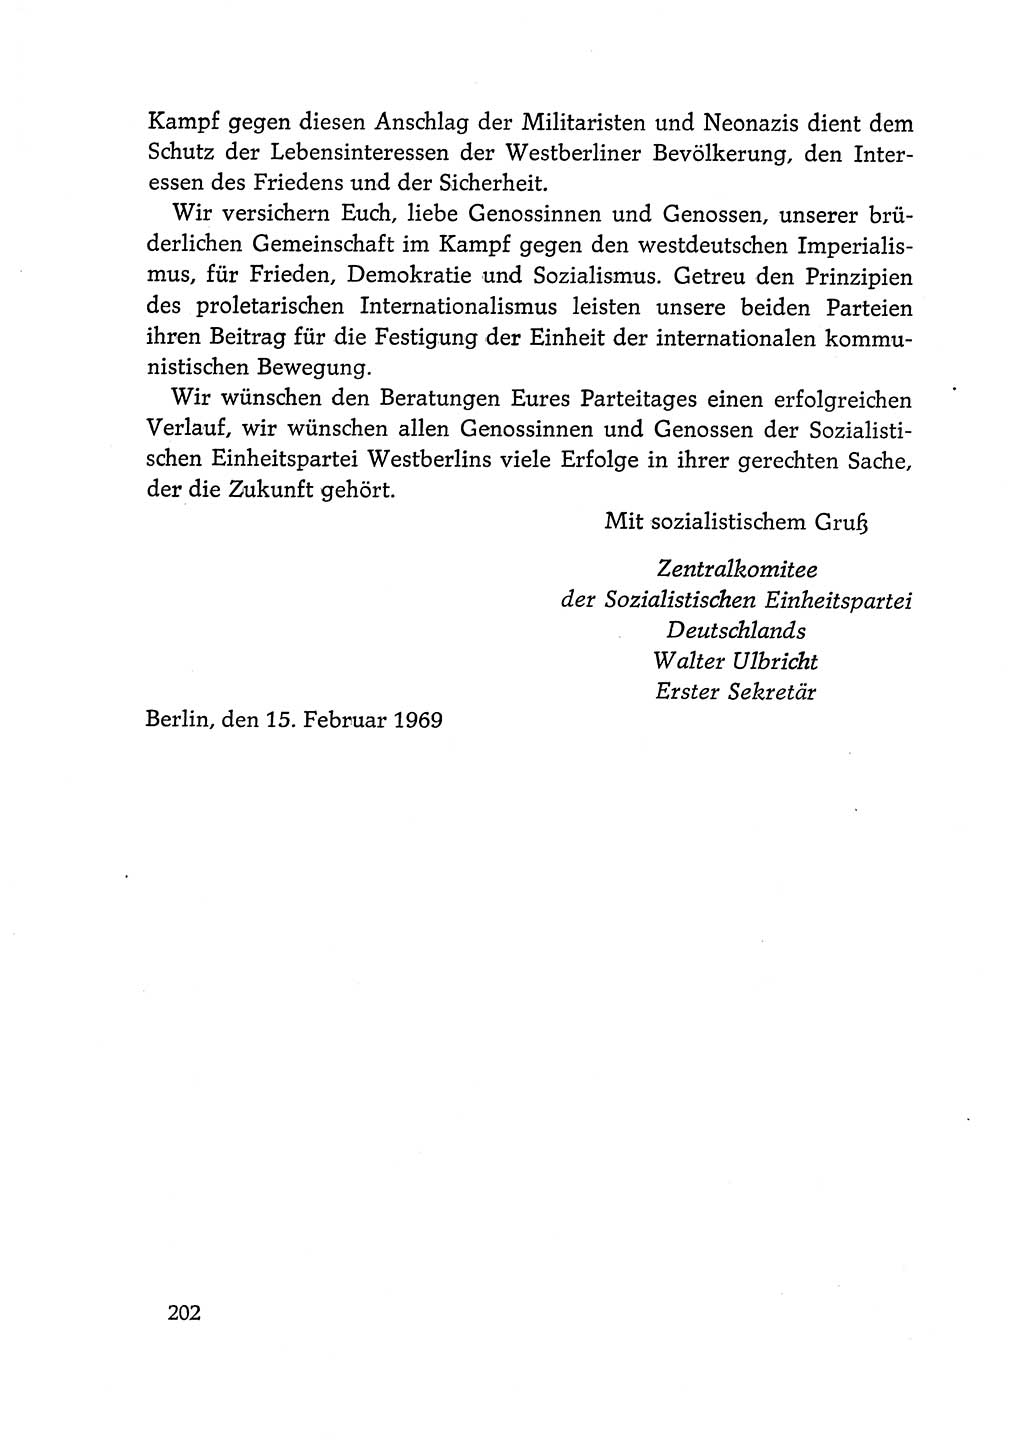 Dokumente der Sozialistischen Einheitspartei Deutschlands (SED) [Deutsche Demokratische Republik (DDR)] 1968-1969, Seite 202 (Dok. SED DDR 1968-1969, S. 202)